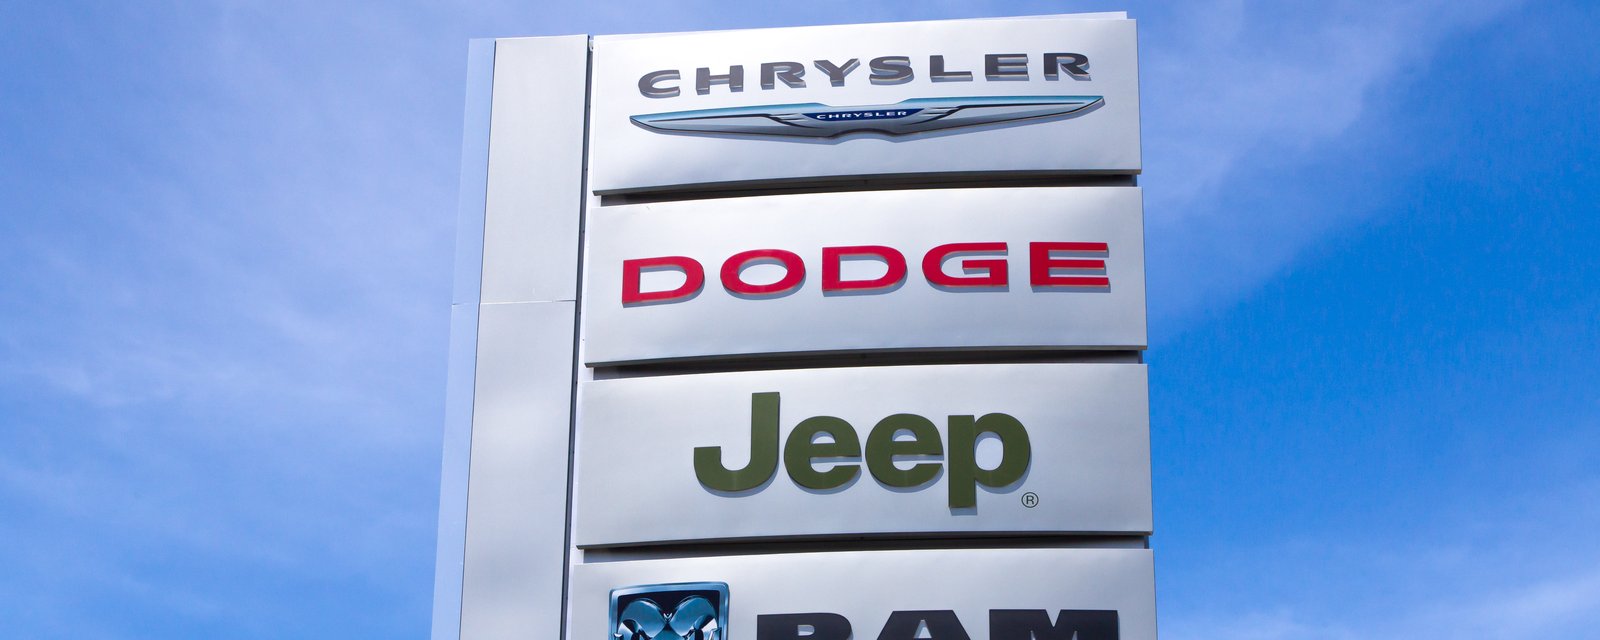 Chrysler ne fera que des voitures électriques dès 2028